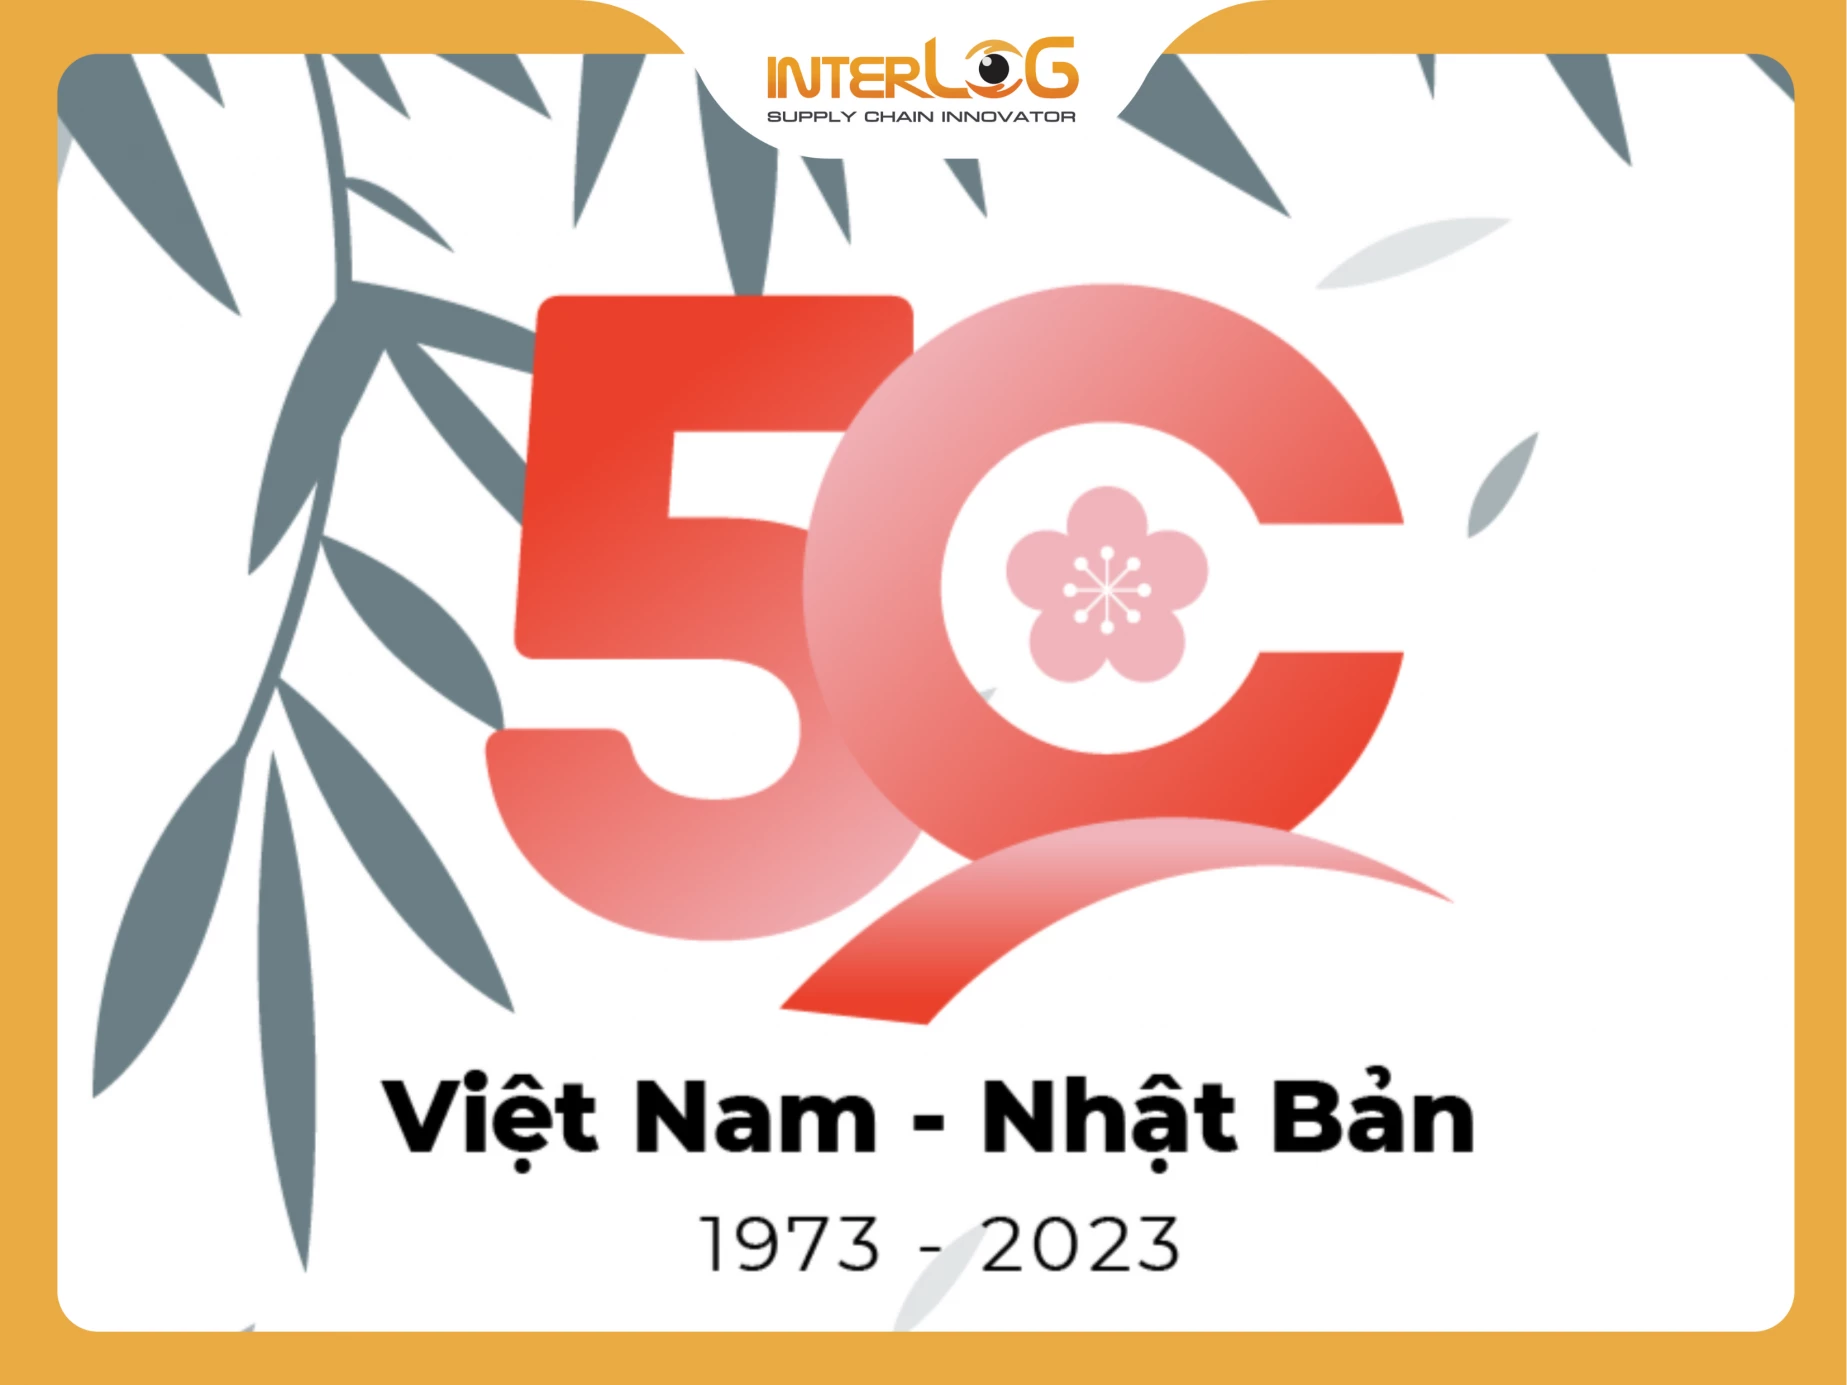 Kỷ niệm 50 năm mối quan hệ ngoại giao giữa Việt Nam - Nhật Bản (1973-2023)